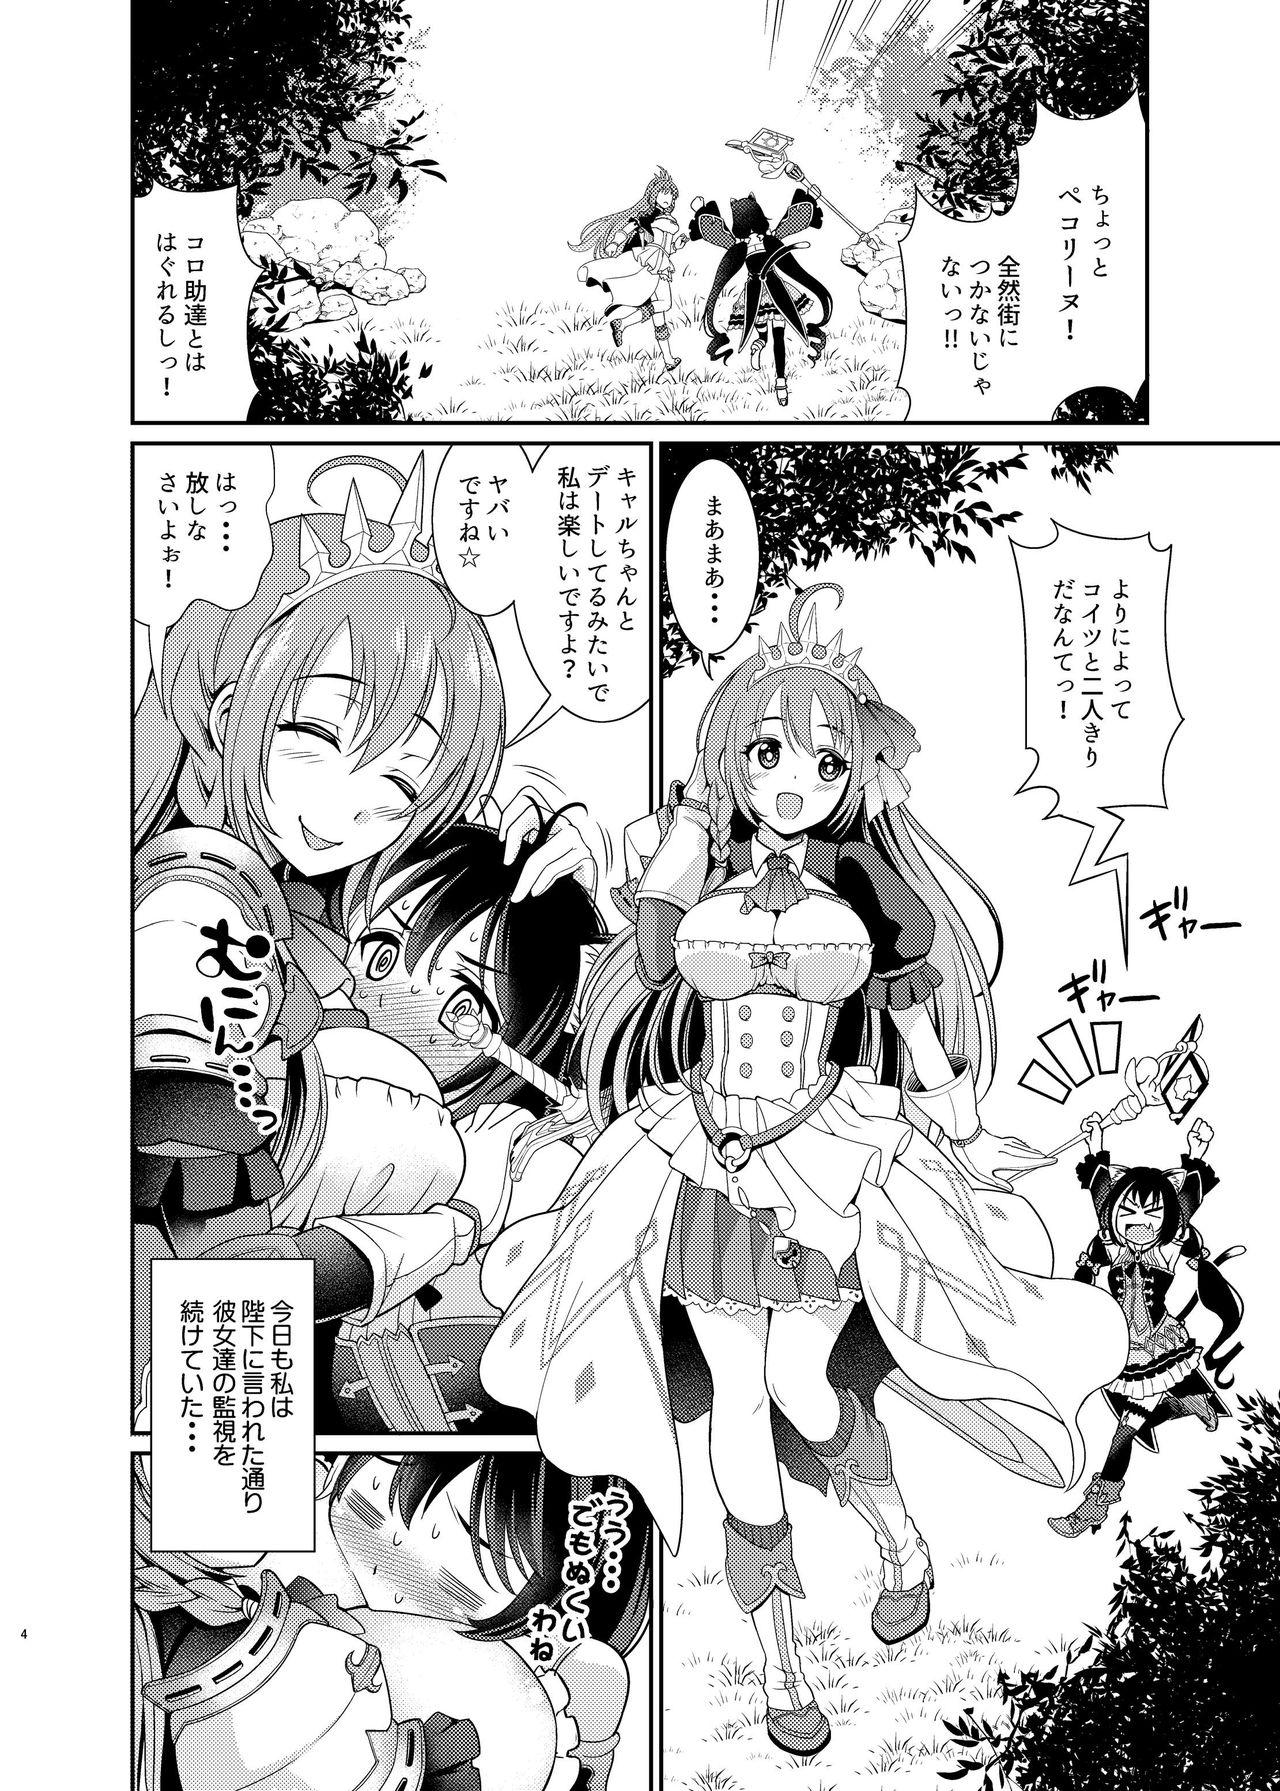 Safado Mamono Nante Tabaru Kara ... Ochinchin ga Hae chaunoyo!! - Princess connect Plump - Page 4